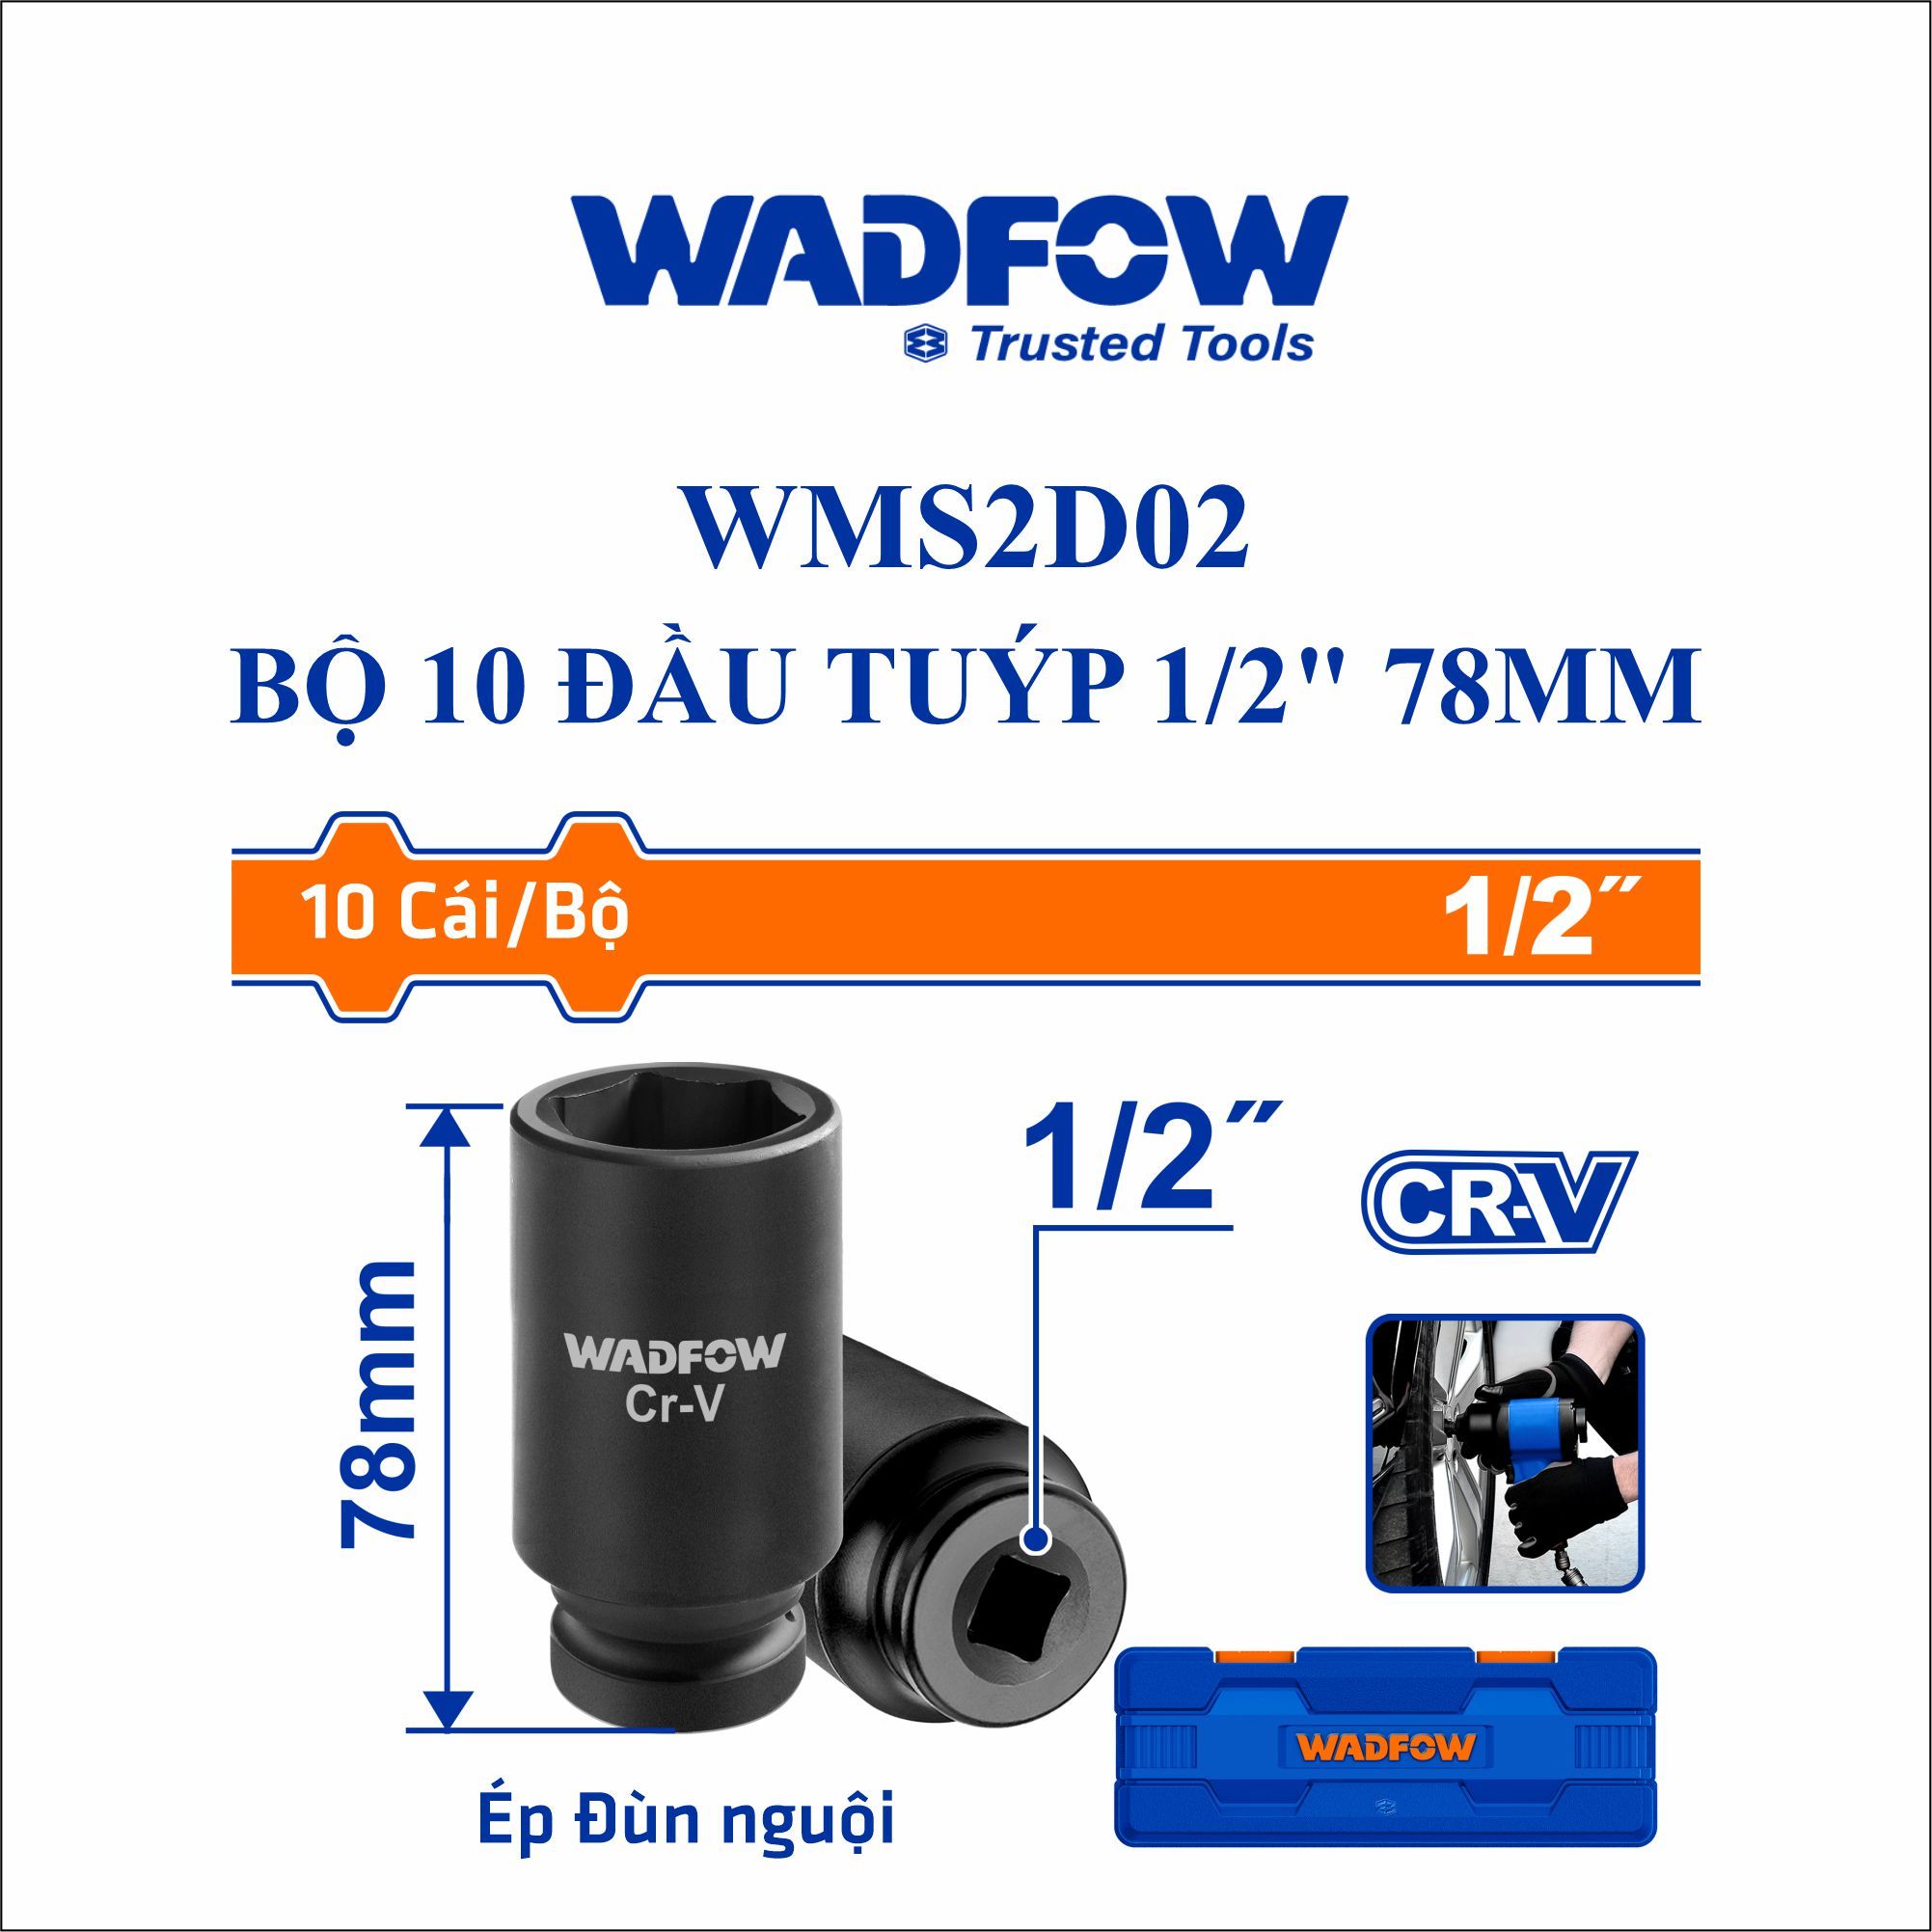  Bộ 10 đầu tuýp 1/2 Inch 78mm WADFOW WMS2D02 